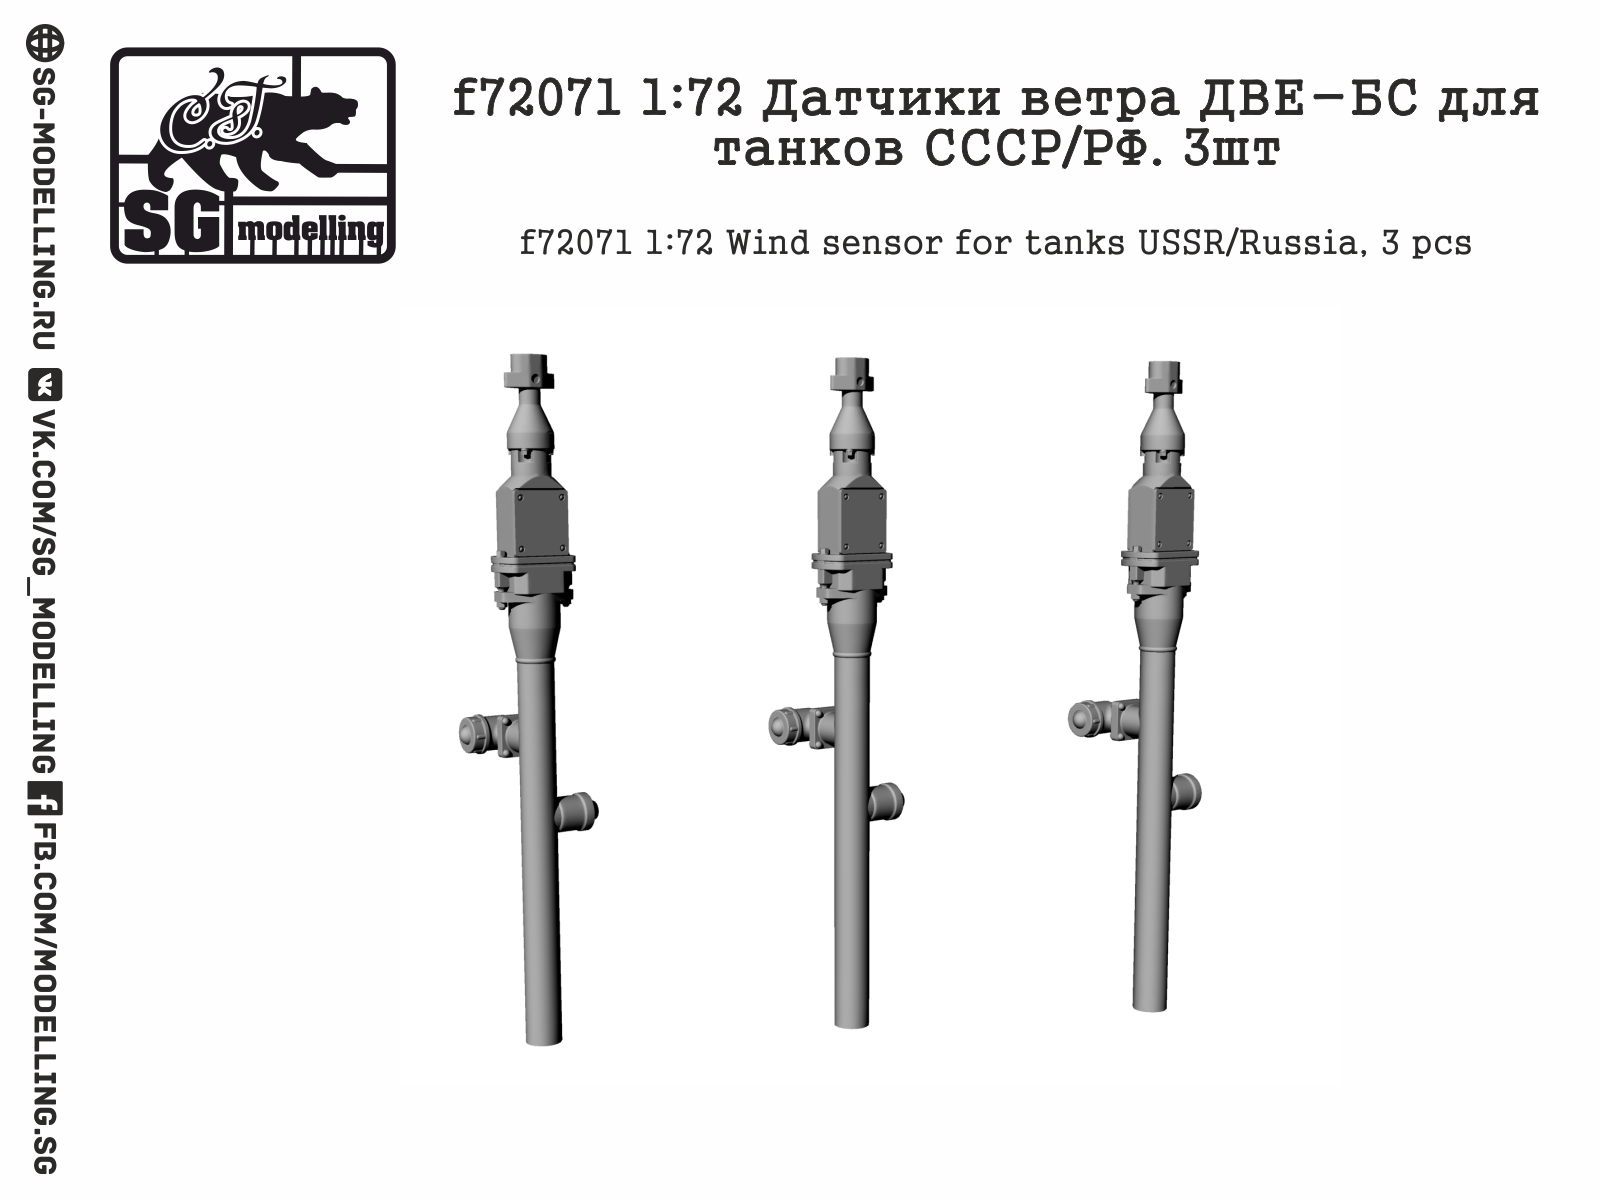 f72071  дополнения из смолы  Датчики ветра ДВЕ-БС для танков СССР/РФ  (1:72)